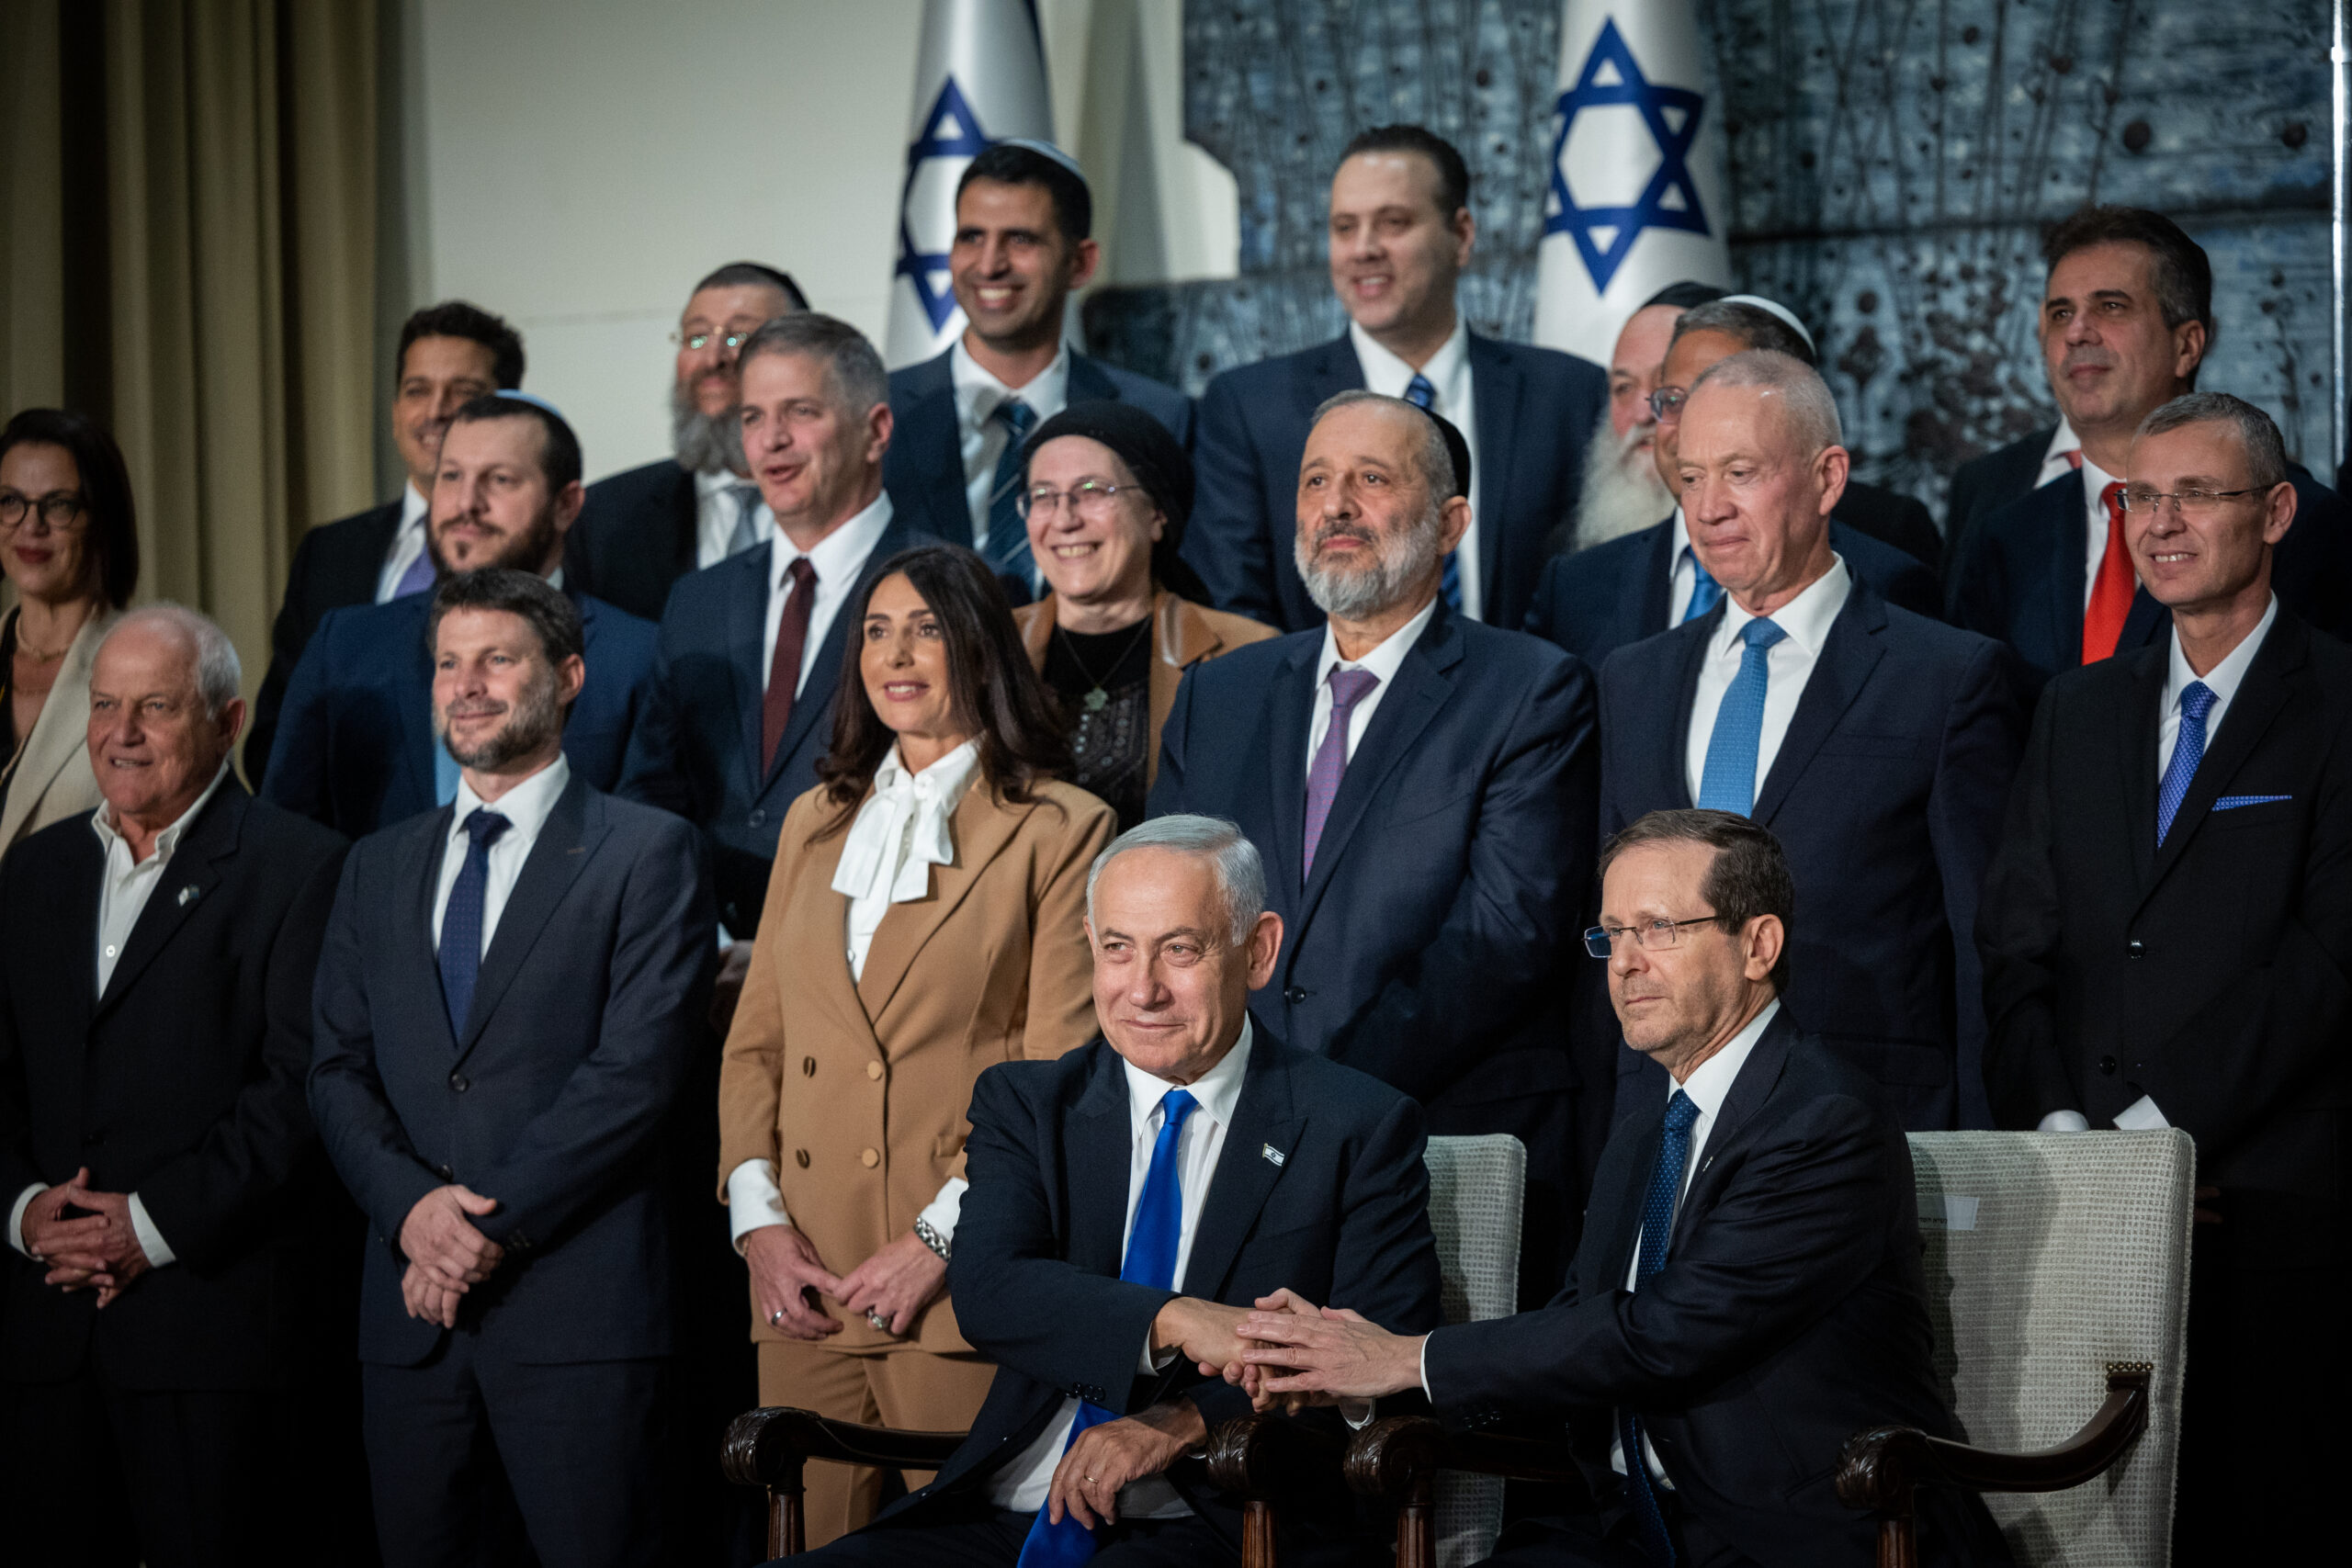 קווי היסוד קבעו שרק לעם היהודי יש זכות בארץ ישראל. ממשלת נתניהו אצל הנשיא הרצוג, דצמבר 2022 (צילום: יונתן זינדל / פלאש 90) 